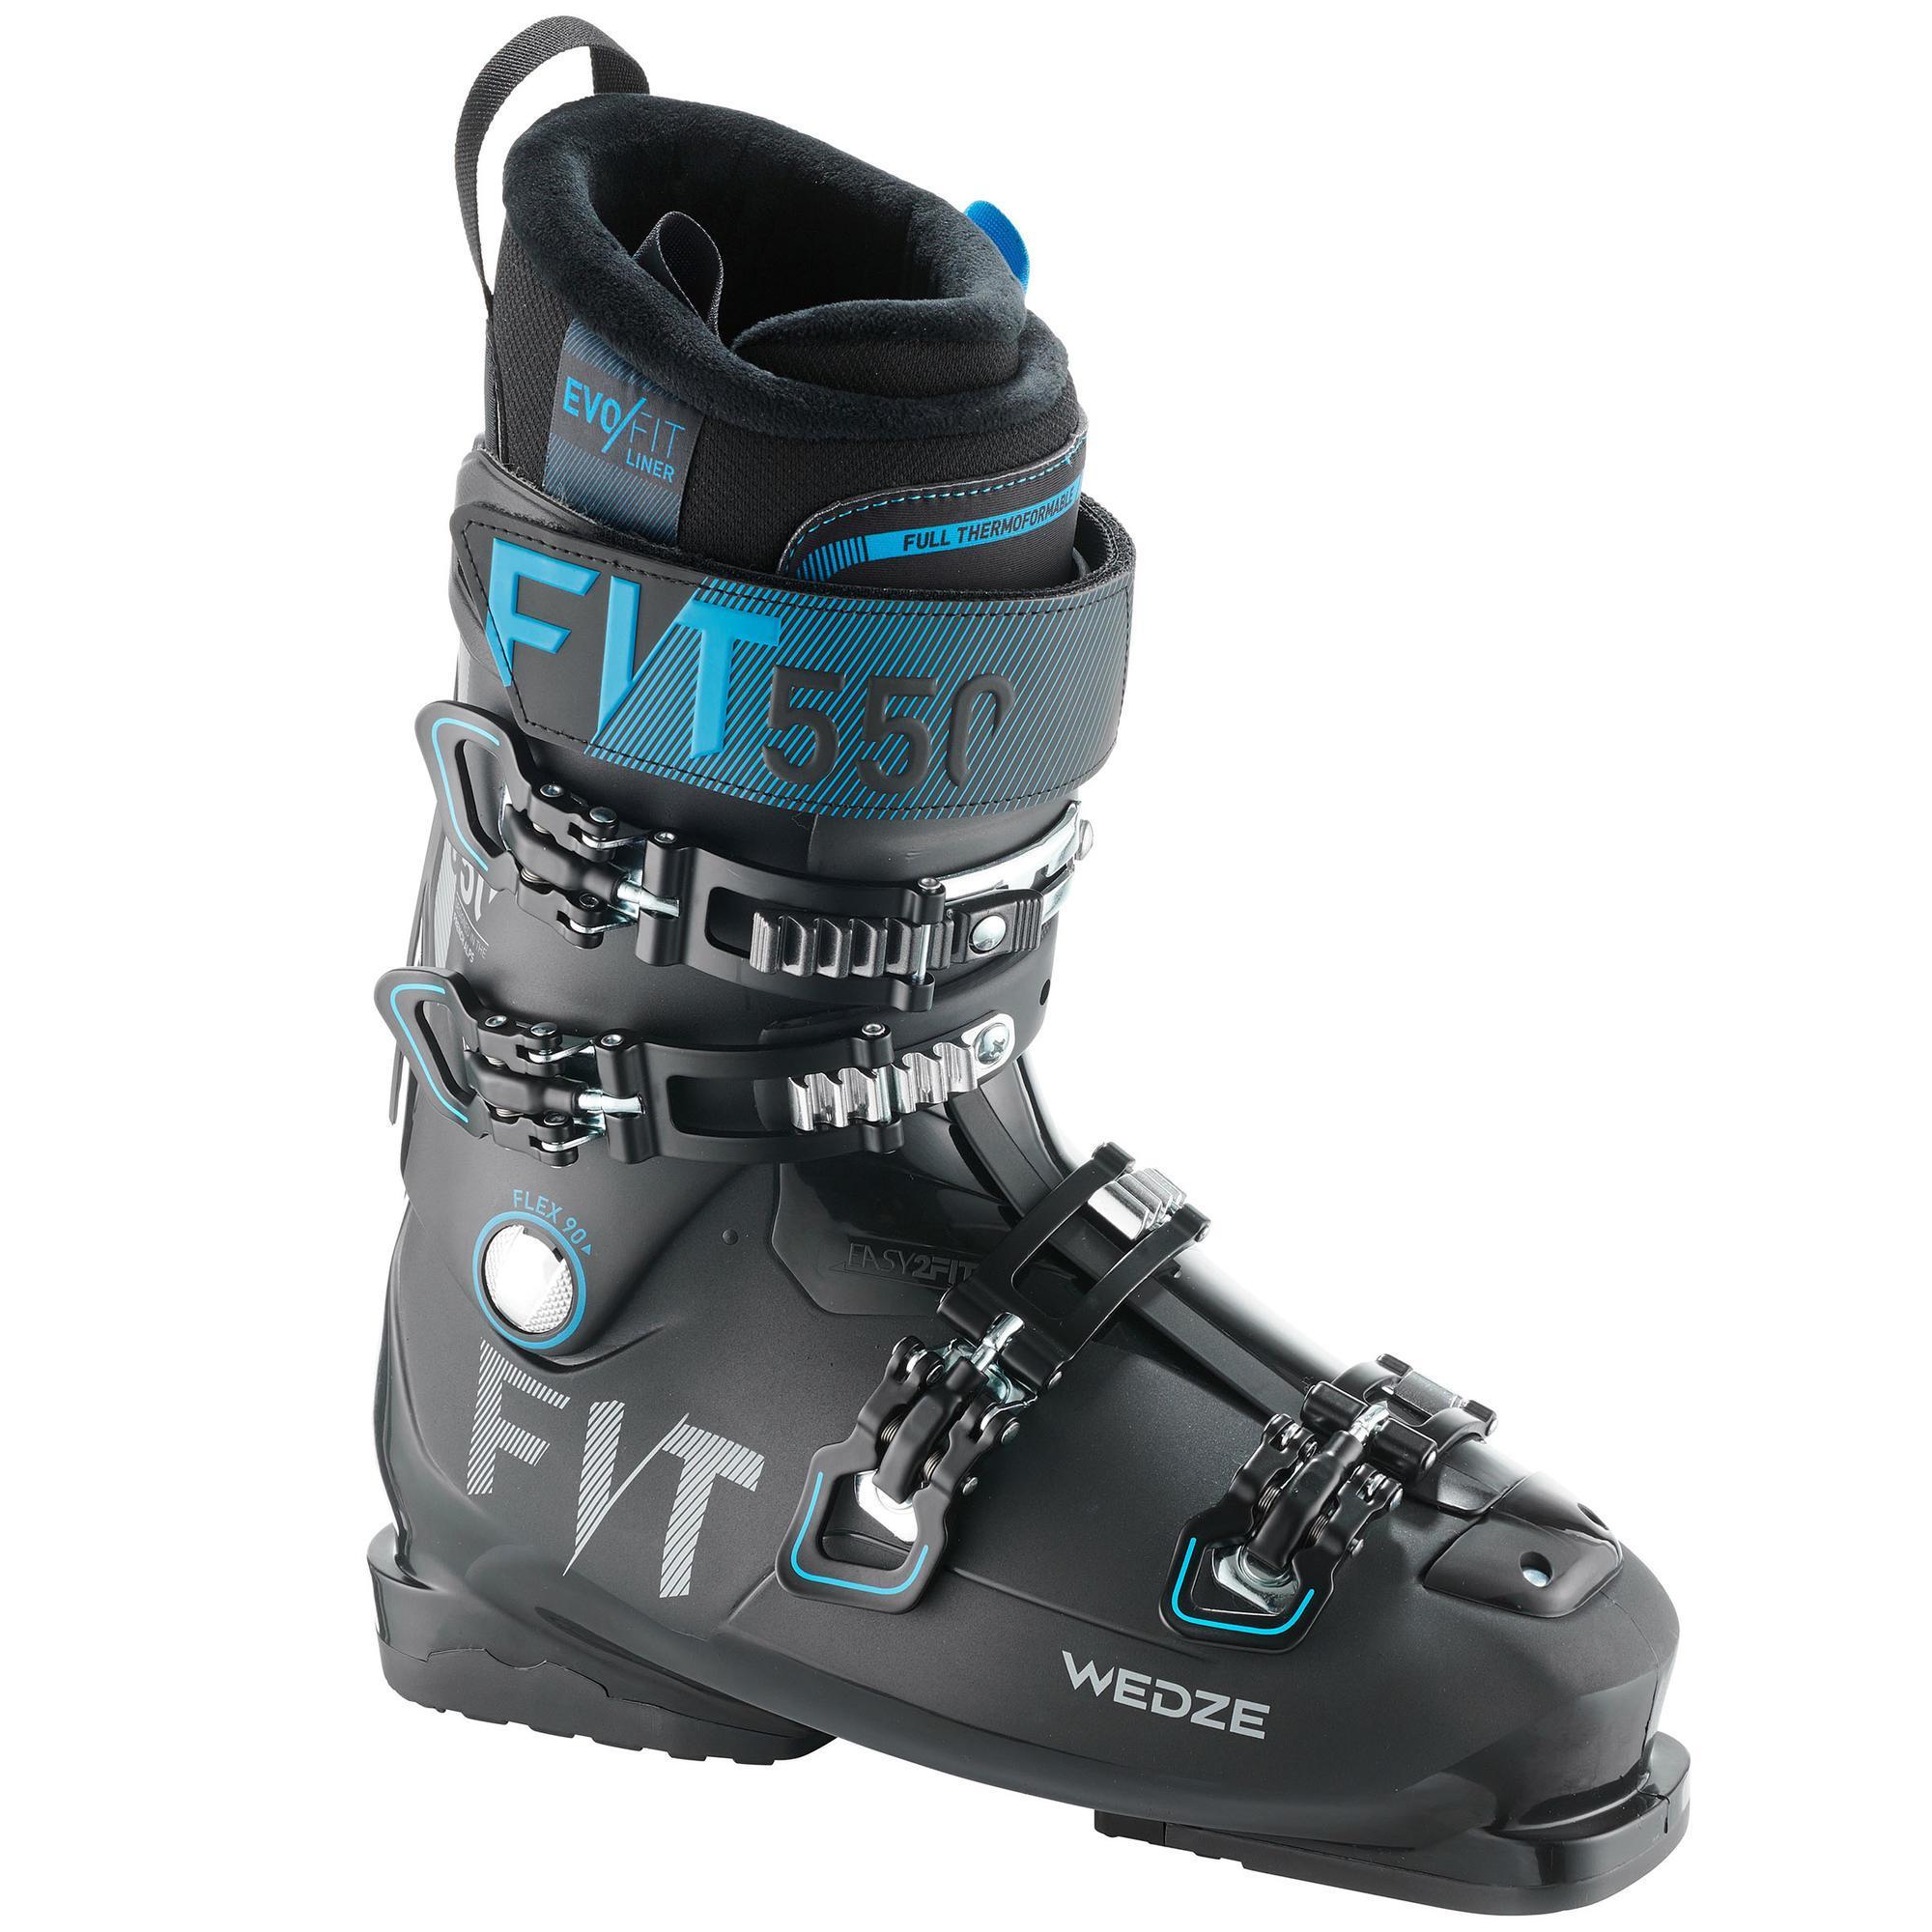 Men's Piste Ski Boots Evofit 550 